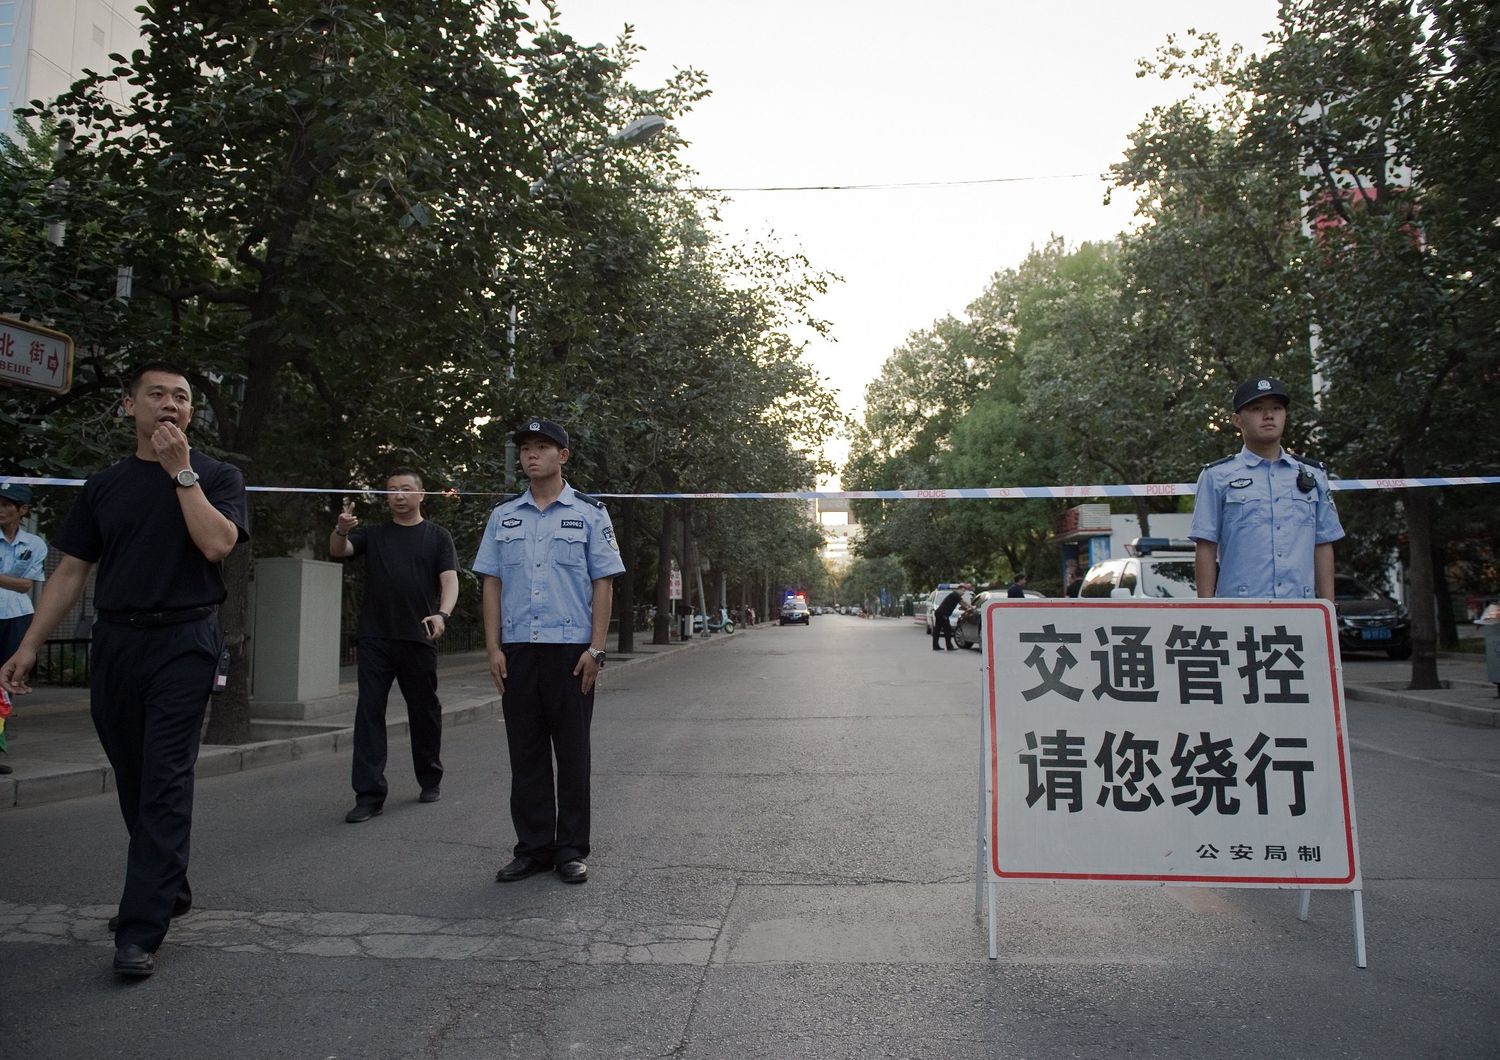 &nbsp;Pechino - polizia cinese blocca strada ambasciata Filippine (Afp)